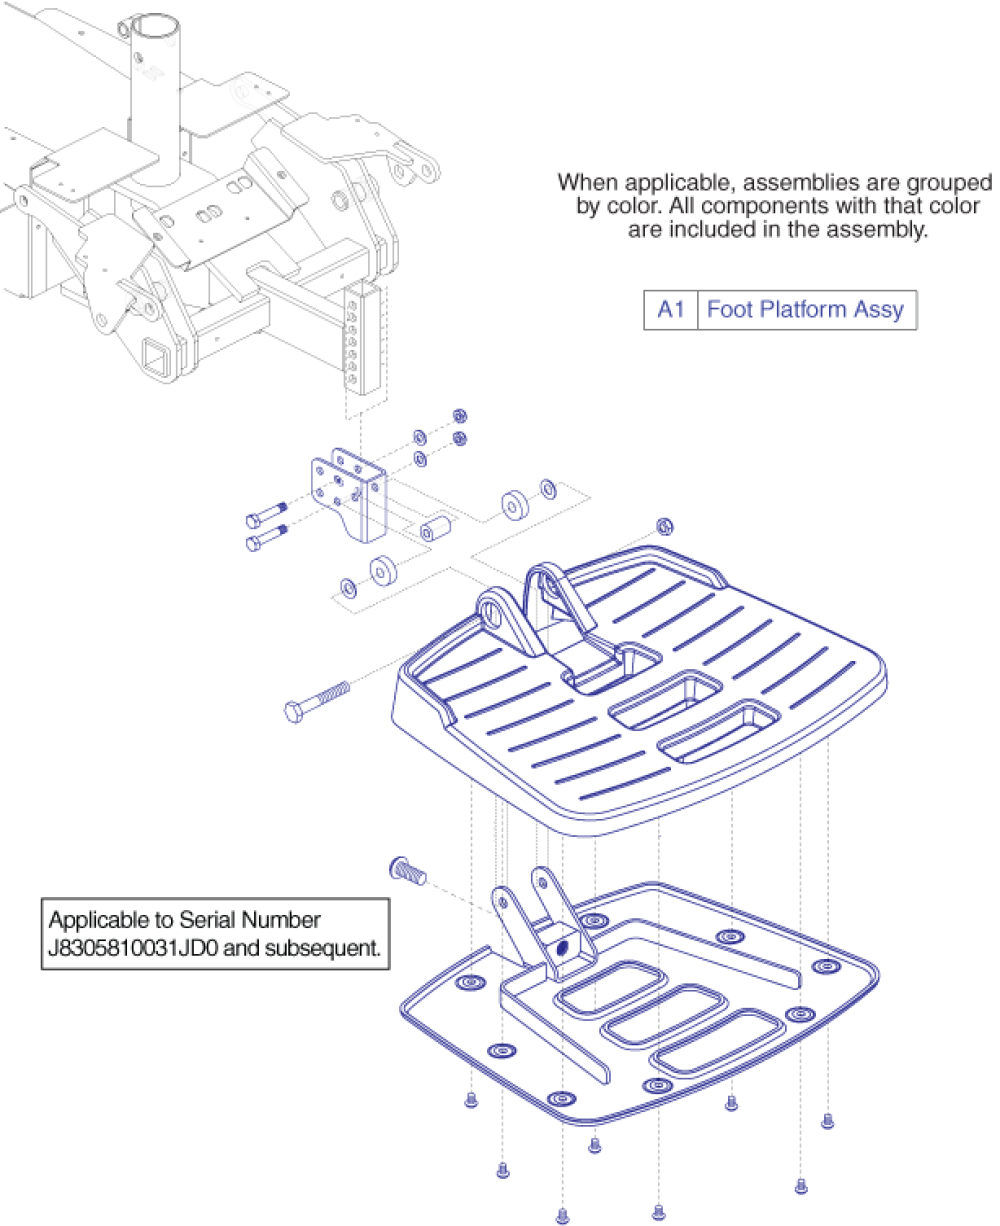 Foot Platform Assembly - Gen 3, Large Stamped parts diagram